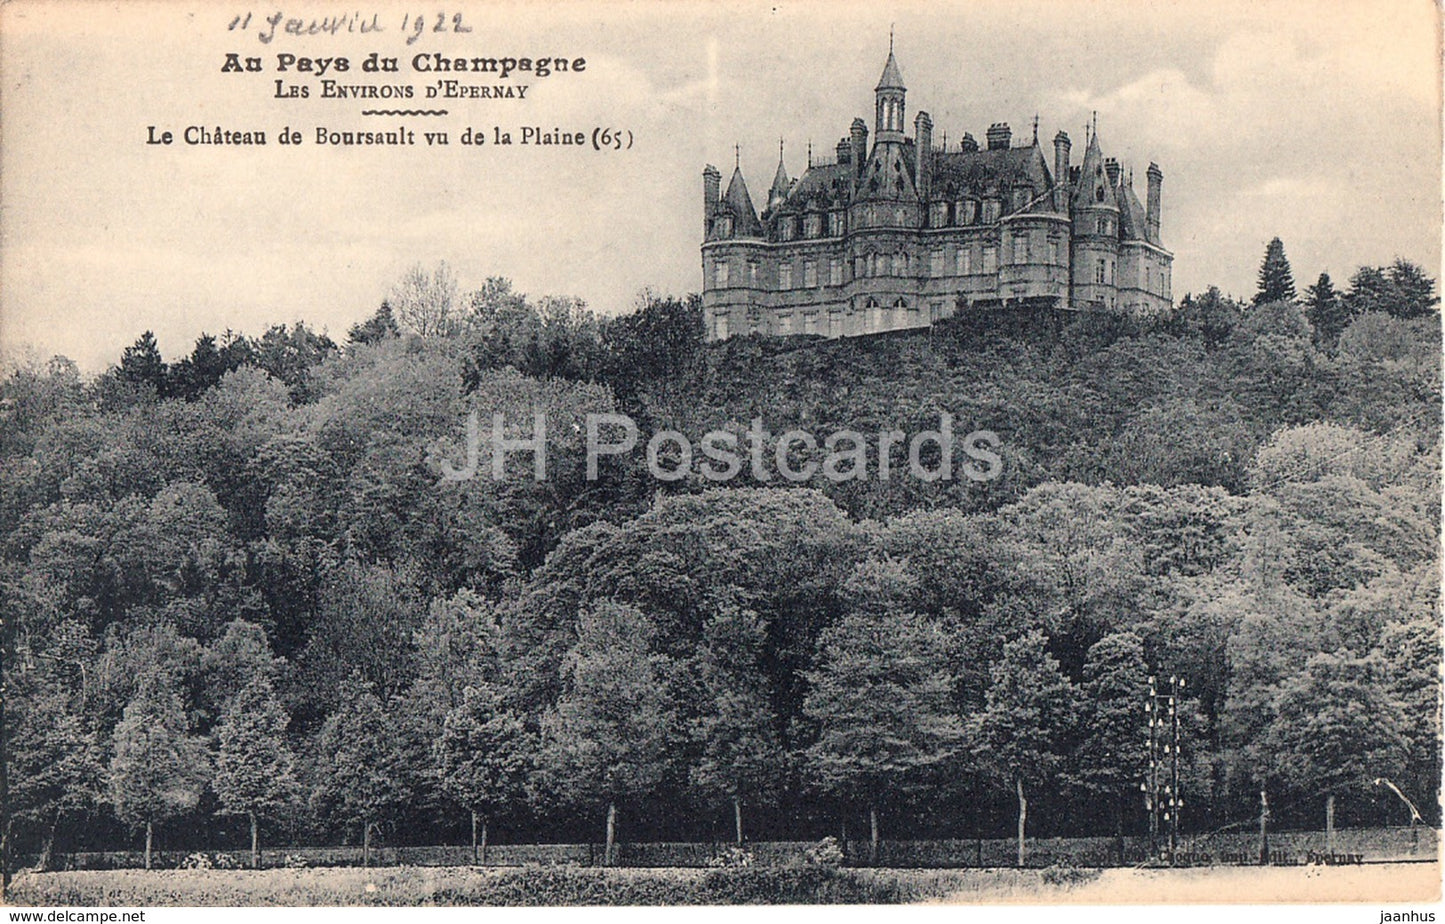 Le Chateau de Boursault vu de la Plaine - Au Pays du Champagne - castle - 65 - old postcard - France - unused - JH Postcards